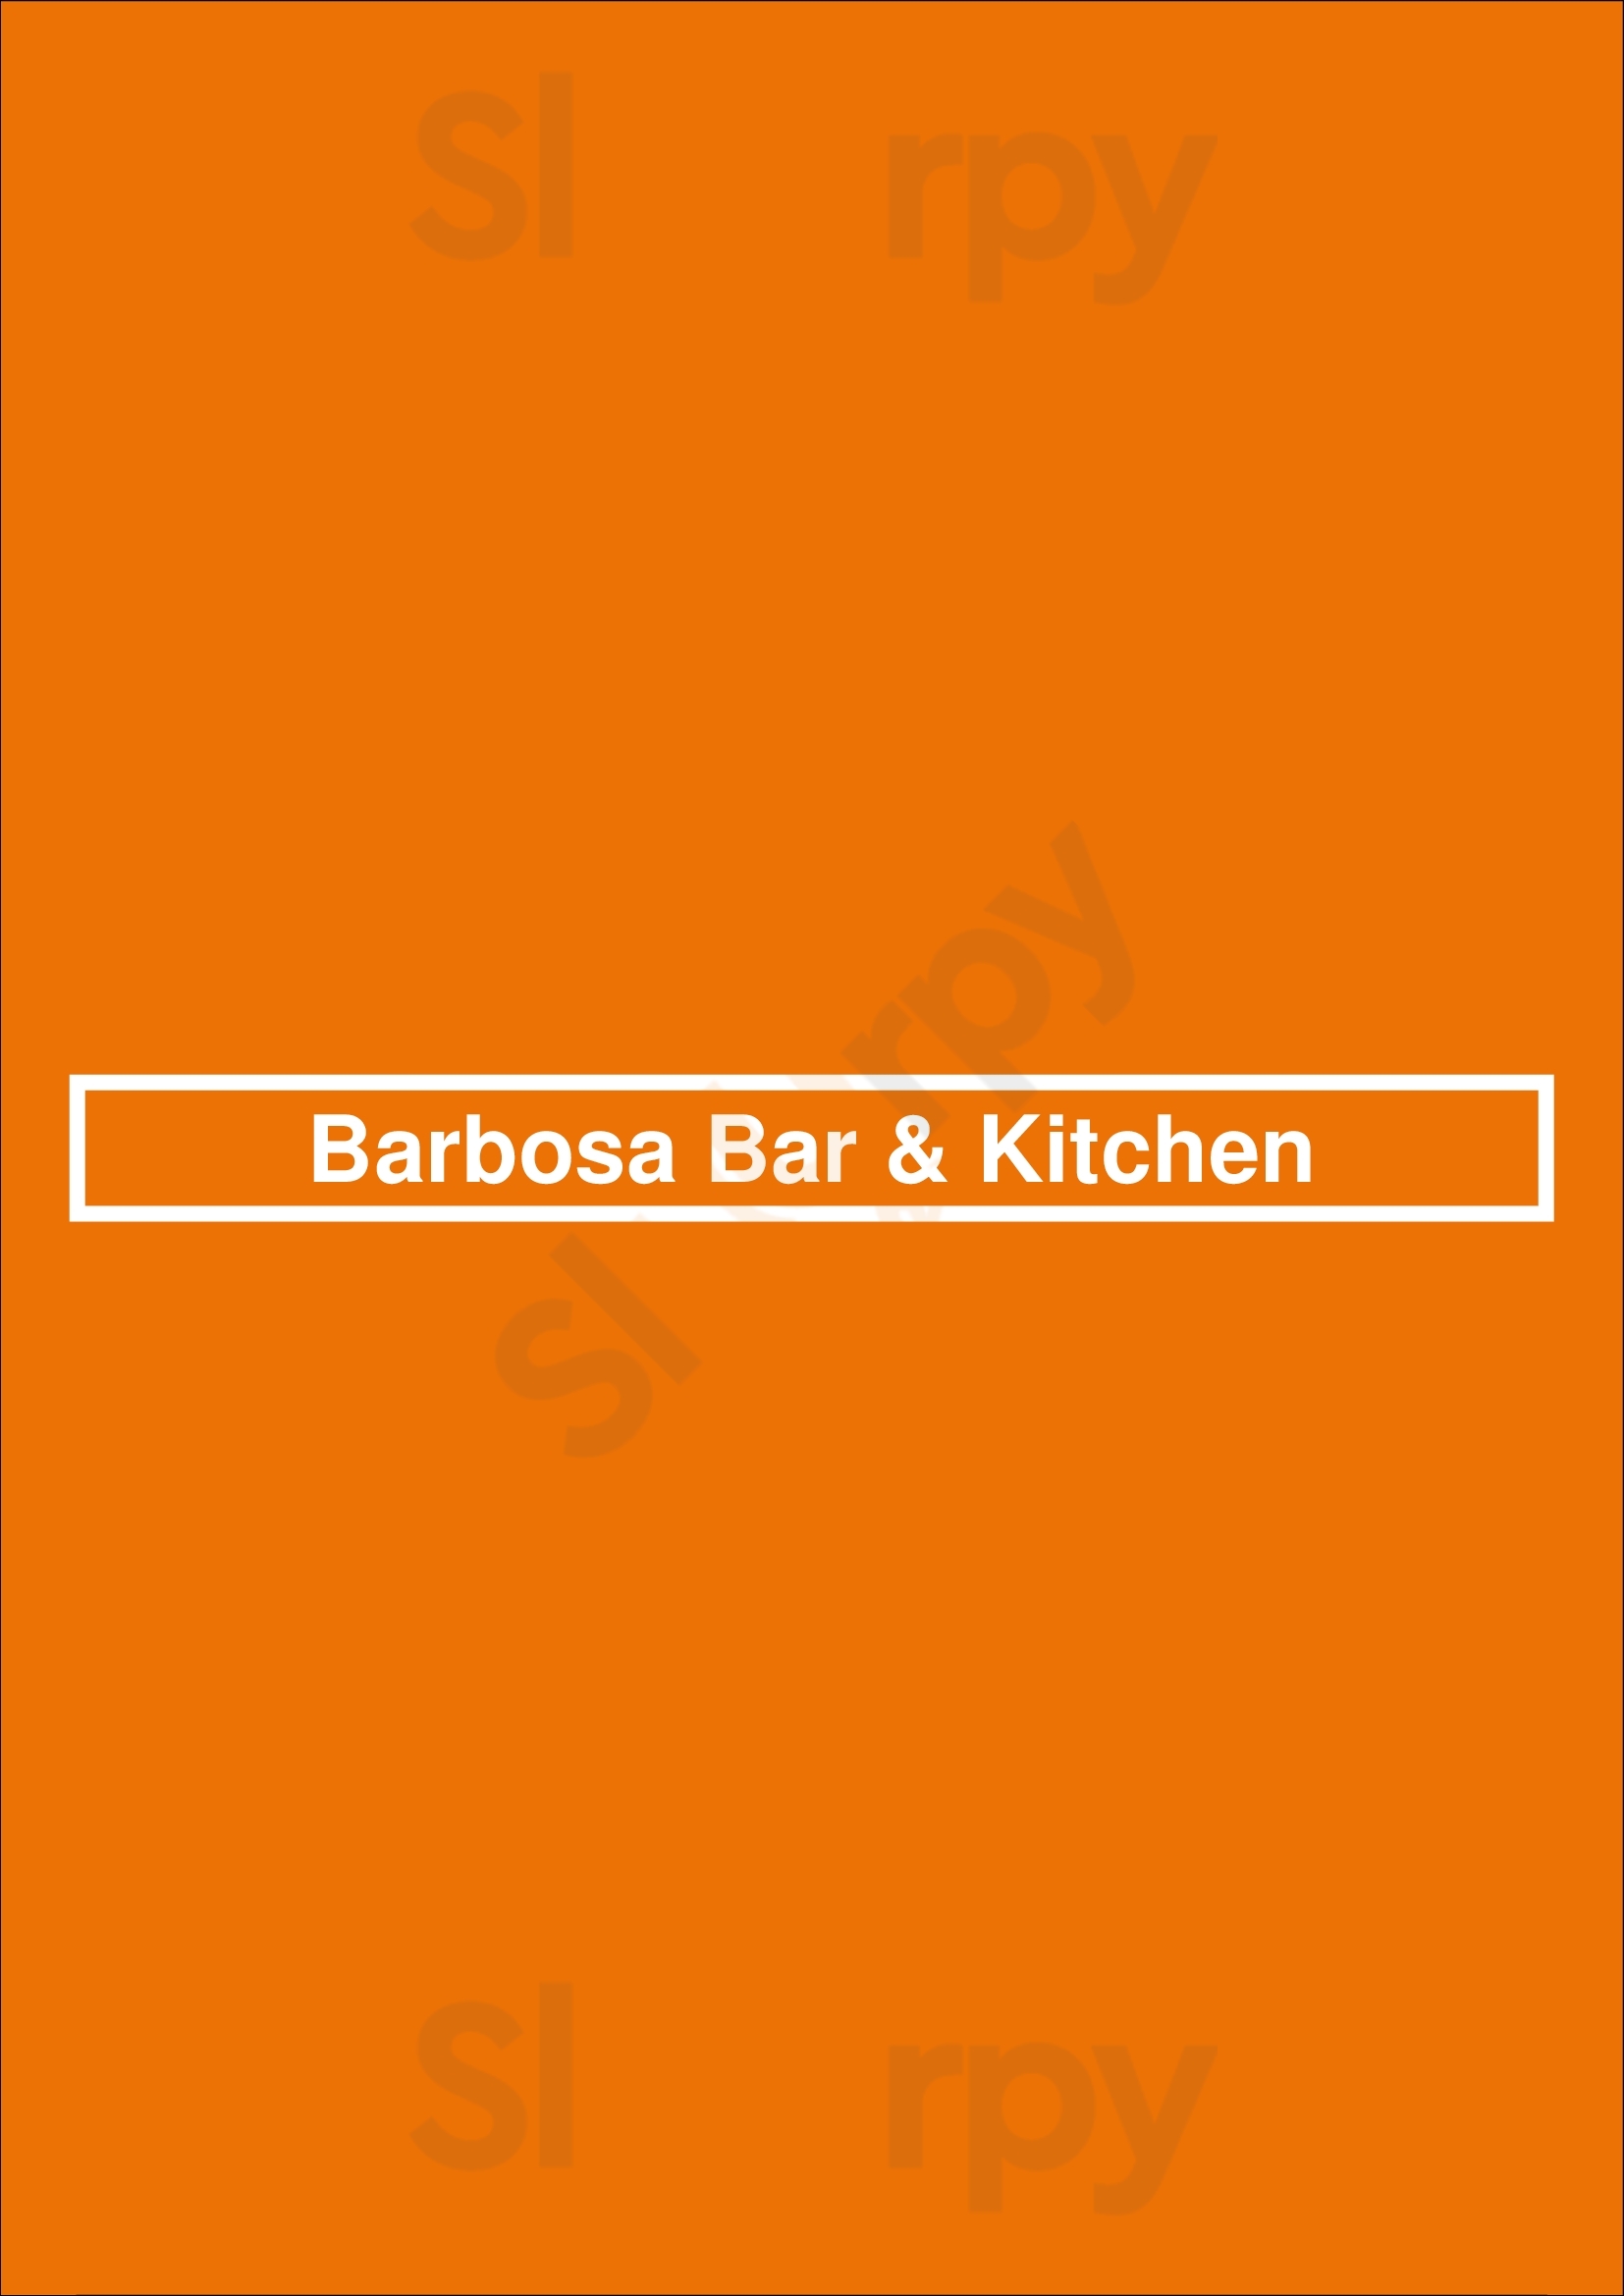 Barbosa Bar & Kitchen Lagos Menu - 1